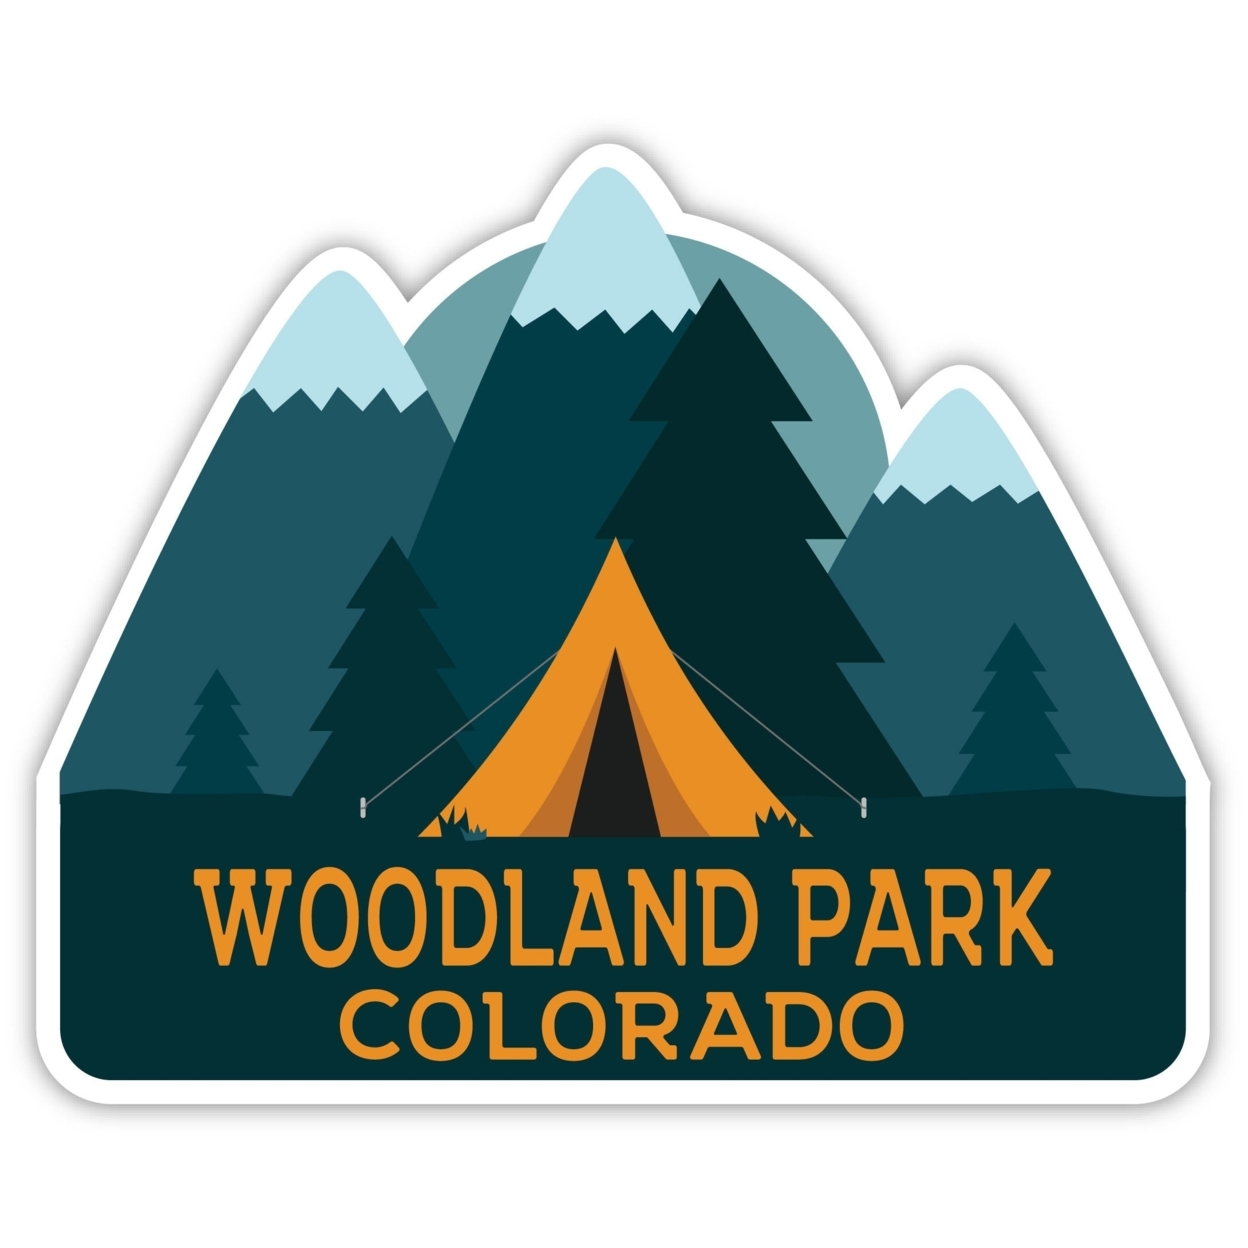 Woodland Park Colorado Souvenir Decorative Stickers (Choose Theme And Size) - Single Unit, 4-Inch, Tent